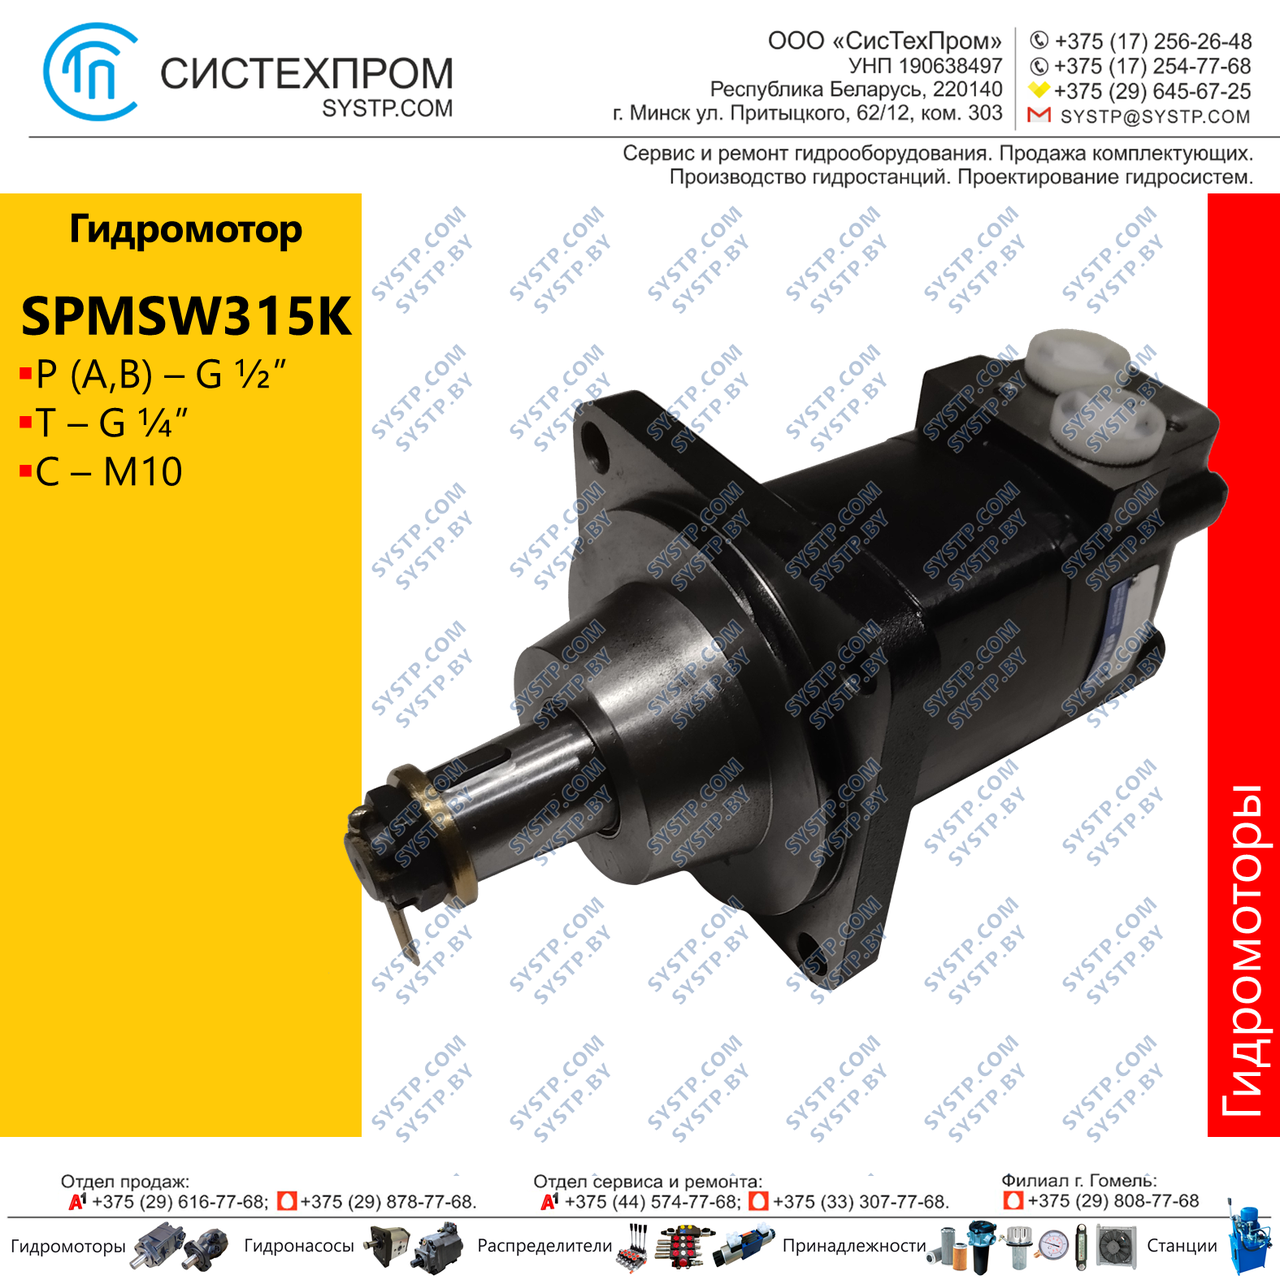 Гидромотор SPMSW315K